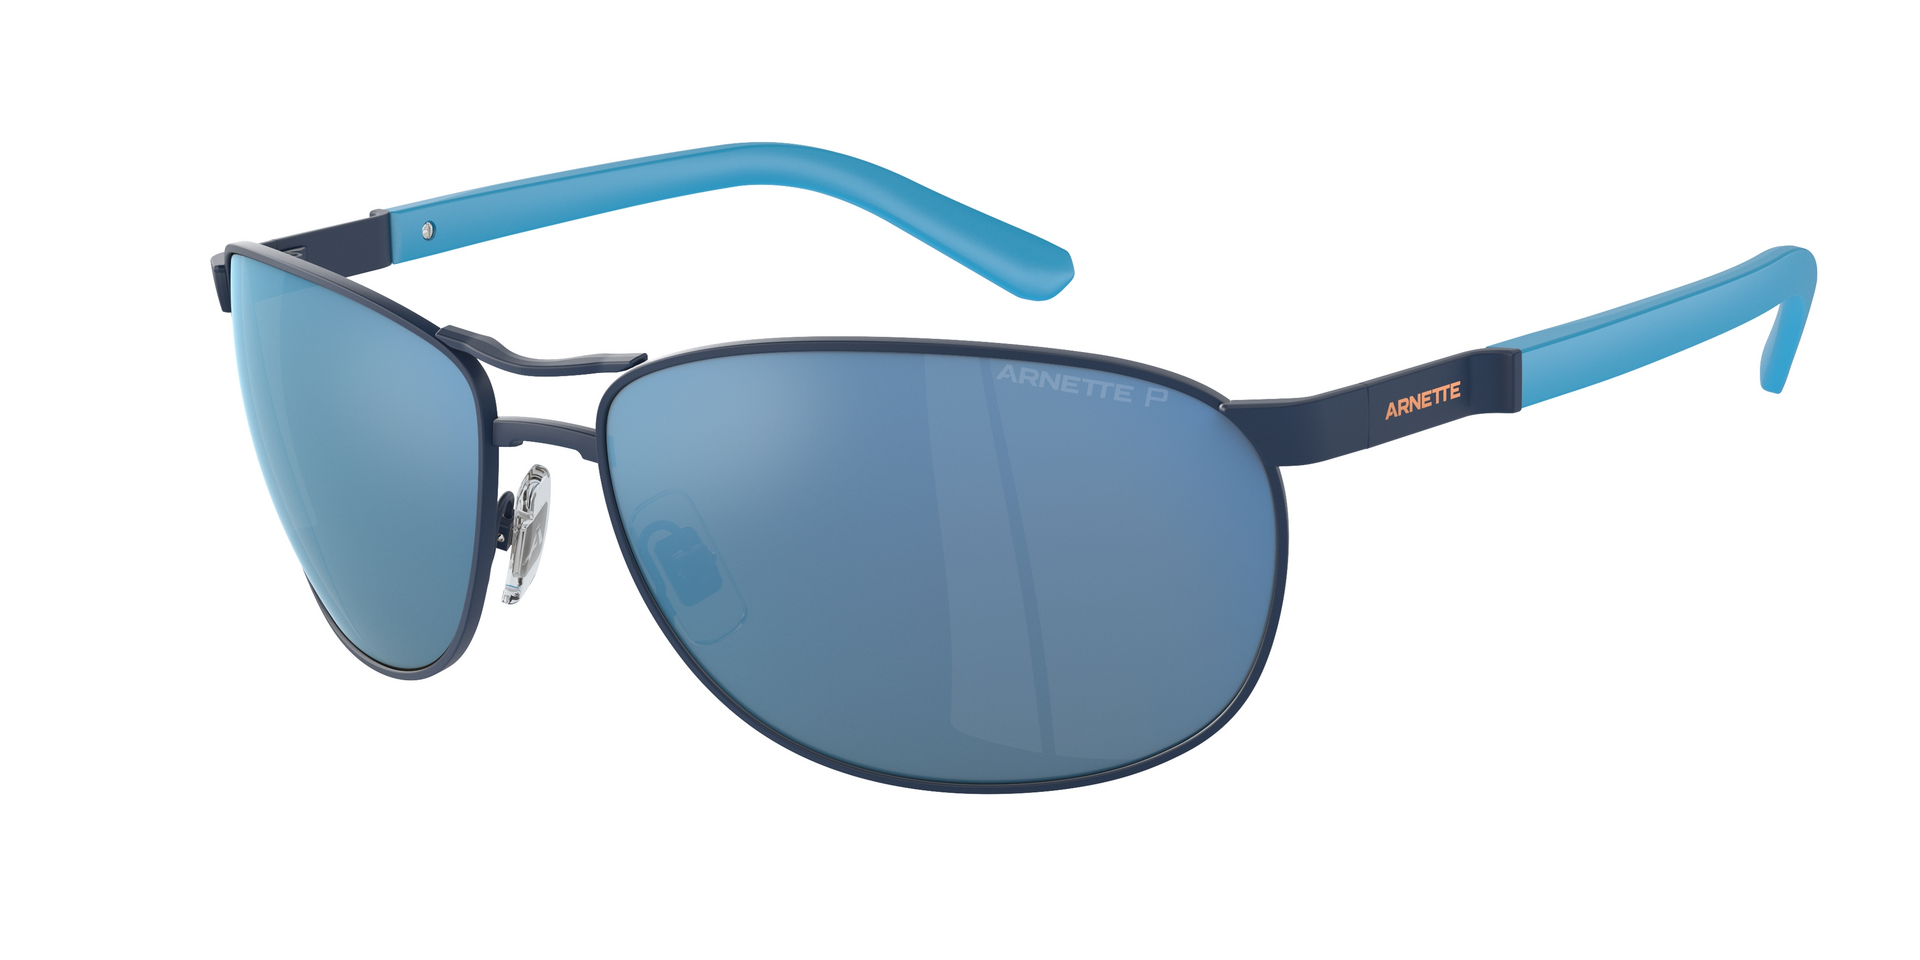 Das Bild zeigt die Sonnenbrille AN3090 744/22 von der Marke Arnette in blau.